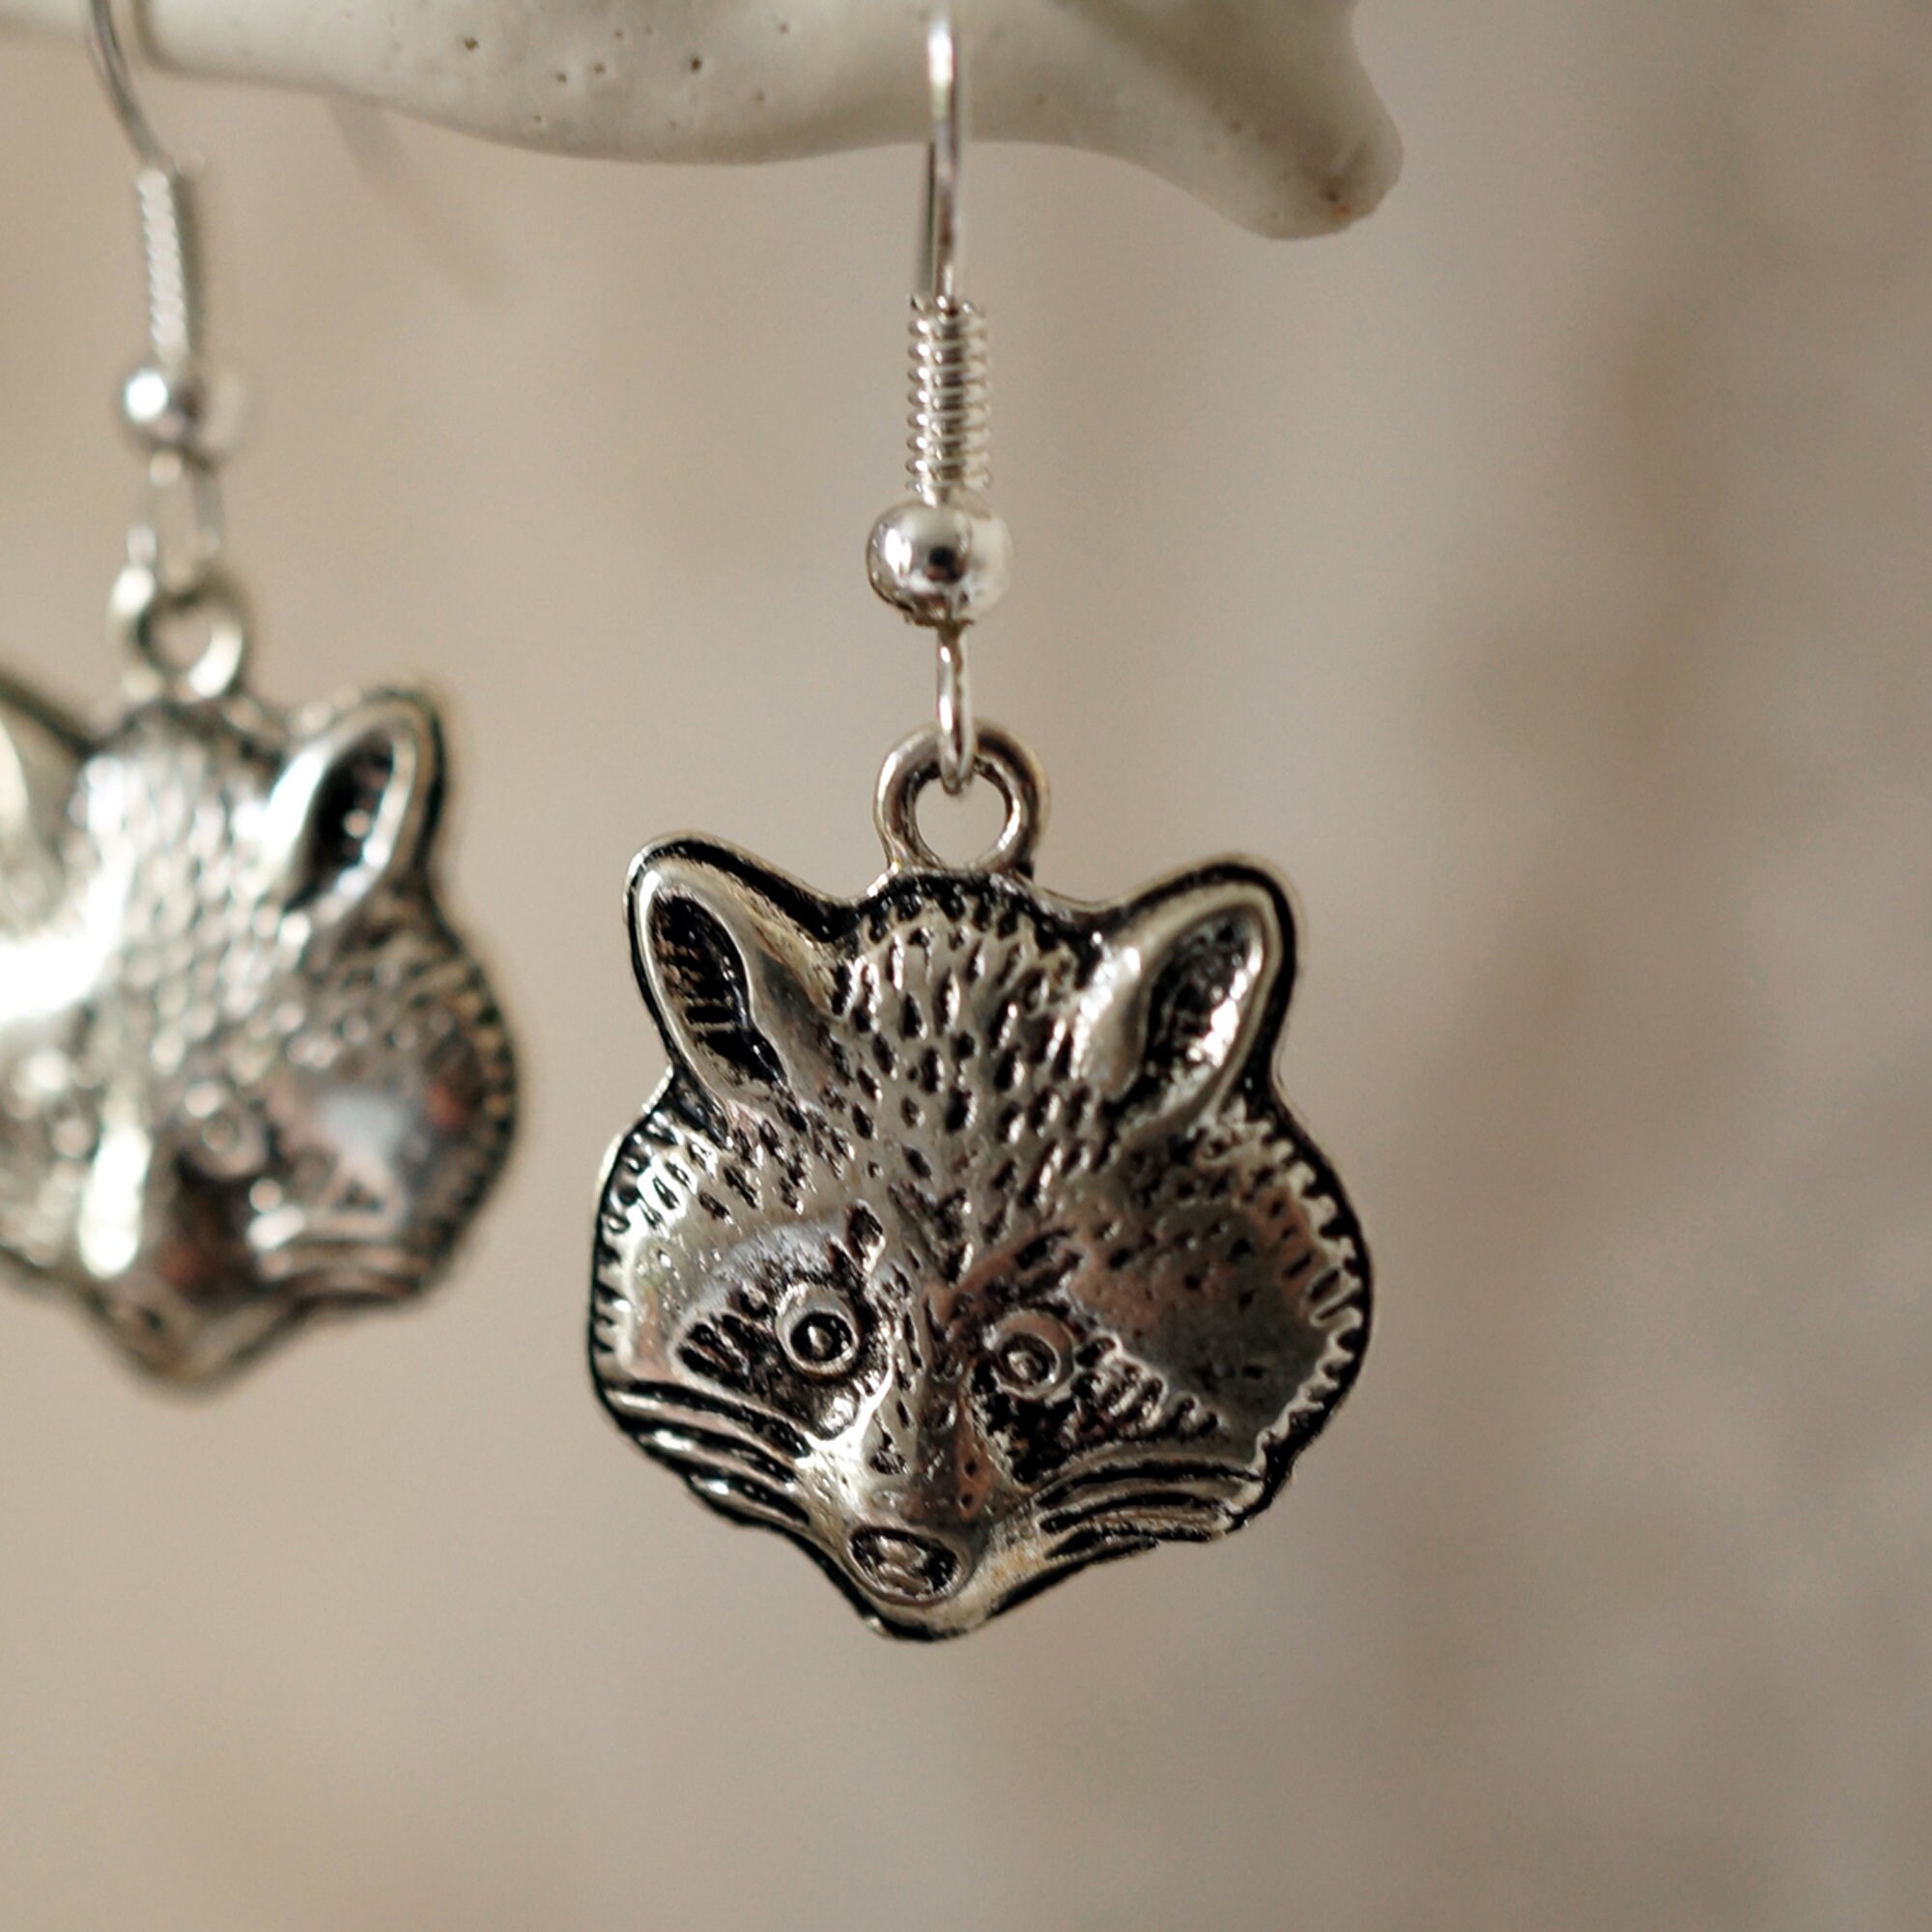 Raccoon Earrings, Funky cool unusual silver raccoon drop earrings for women